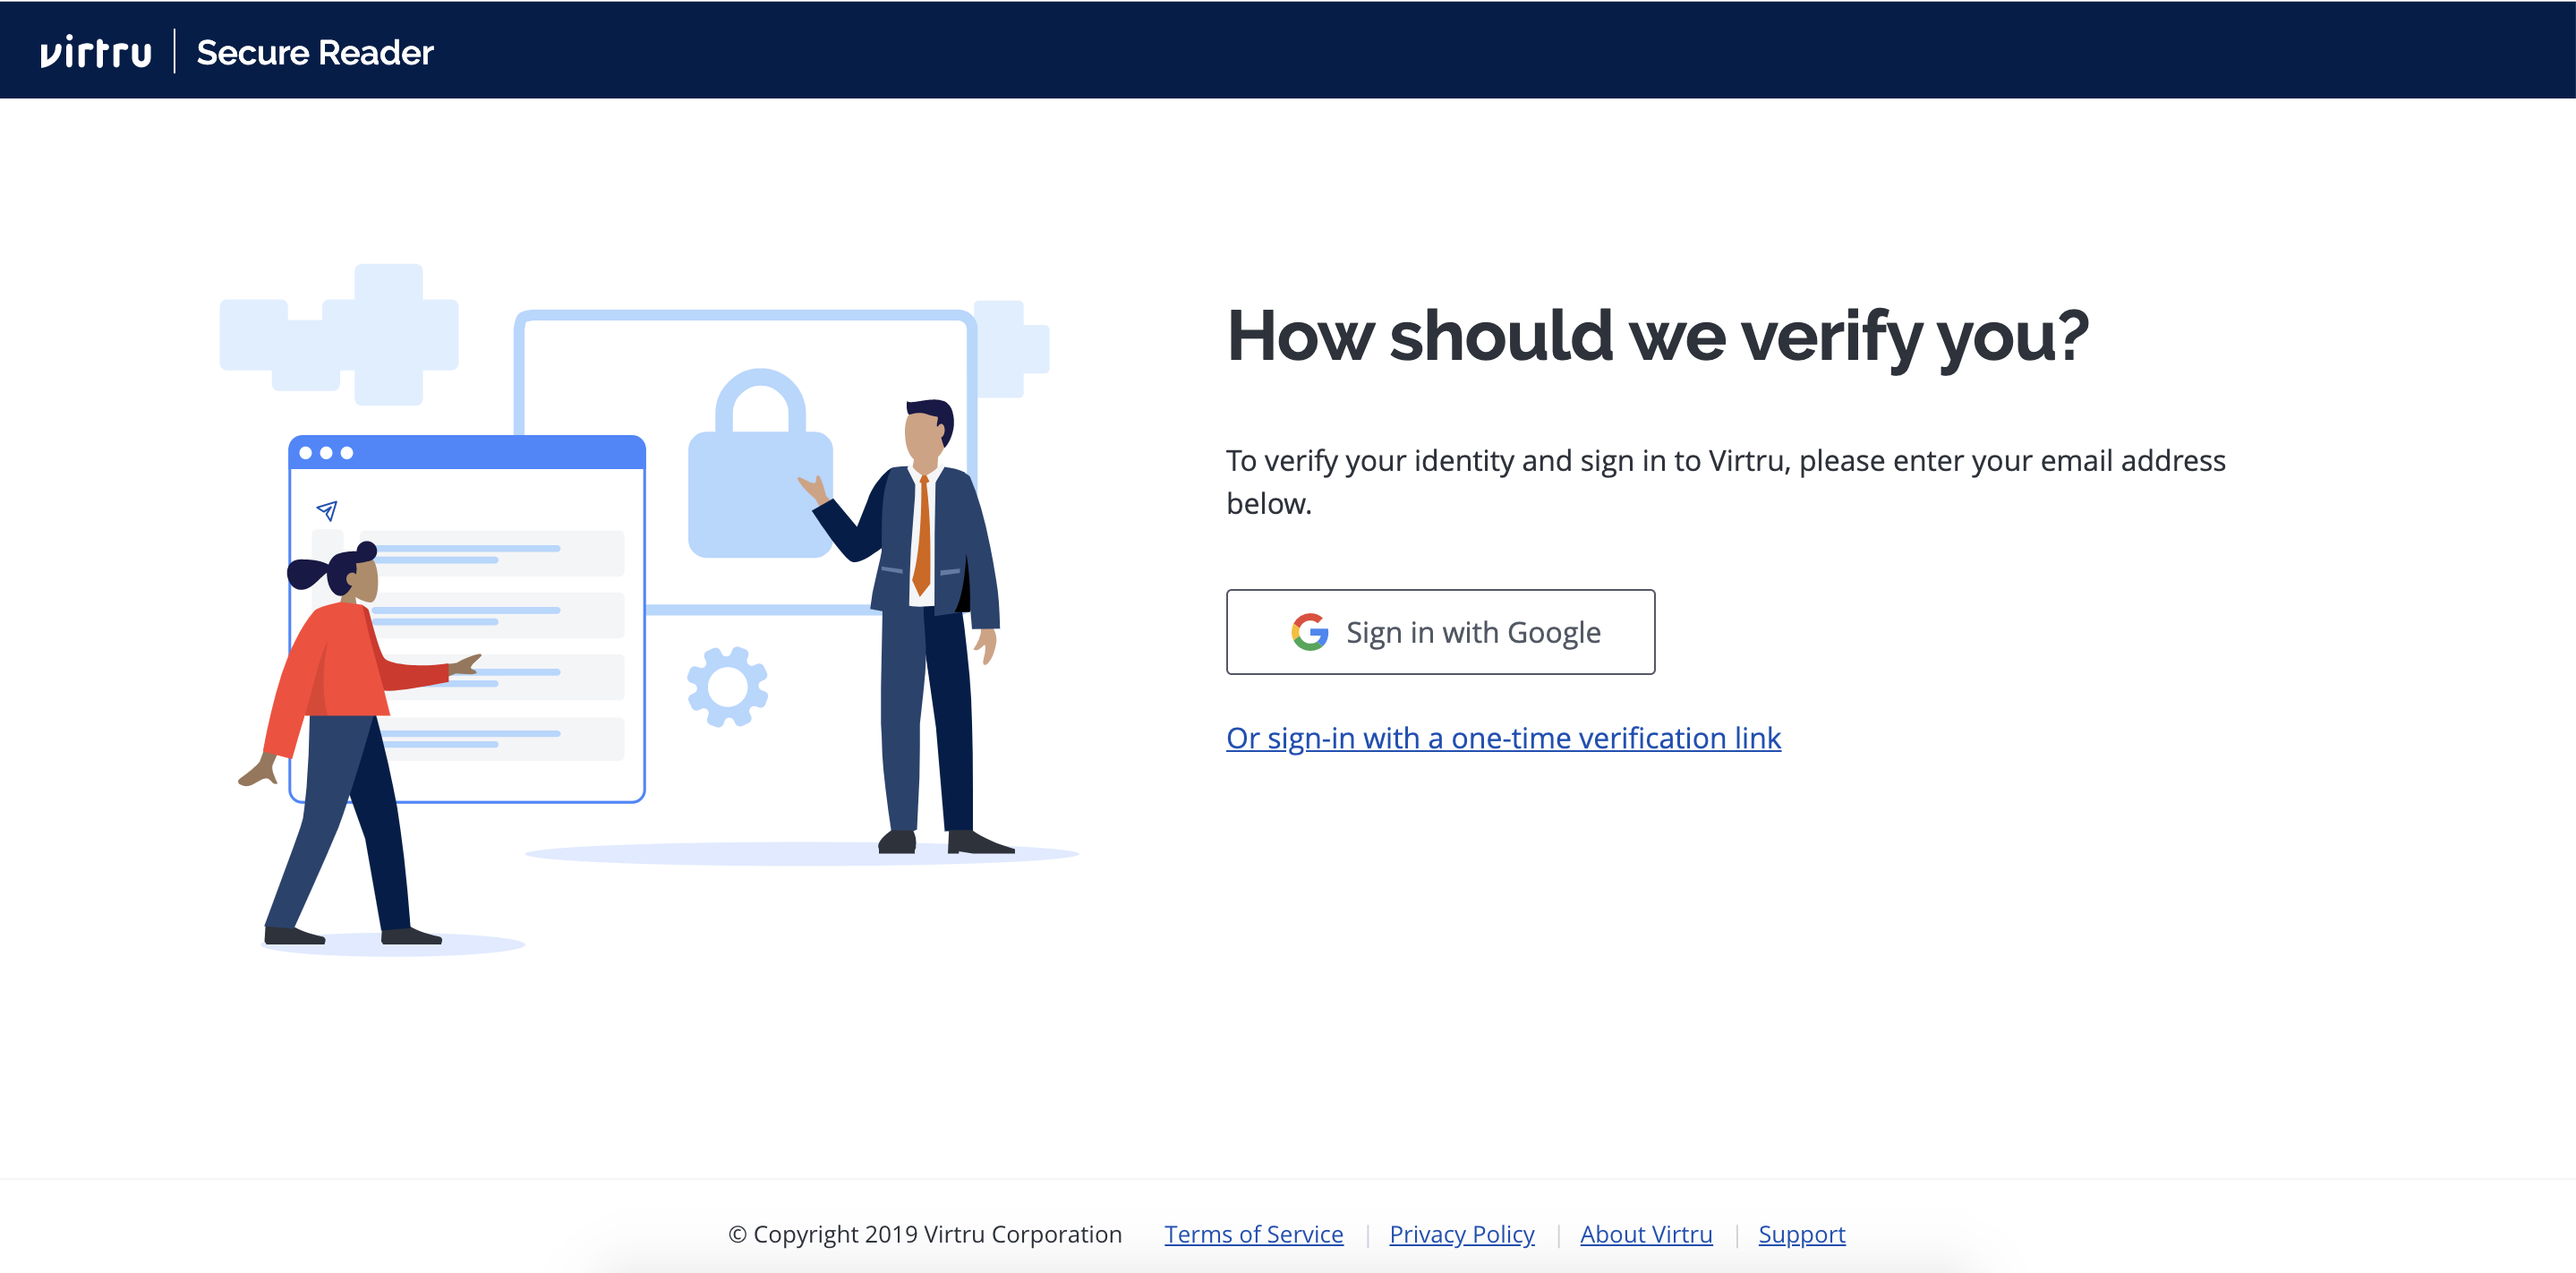 How should we verify you?